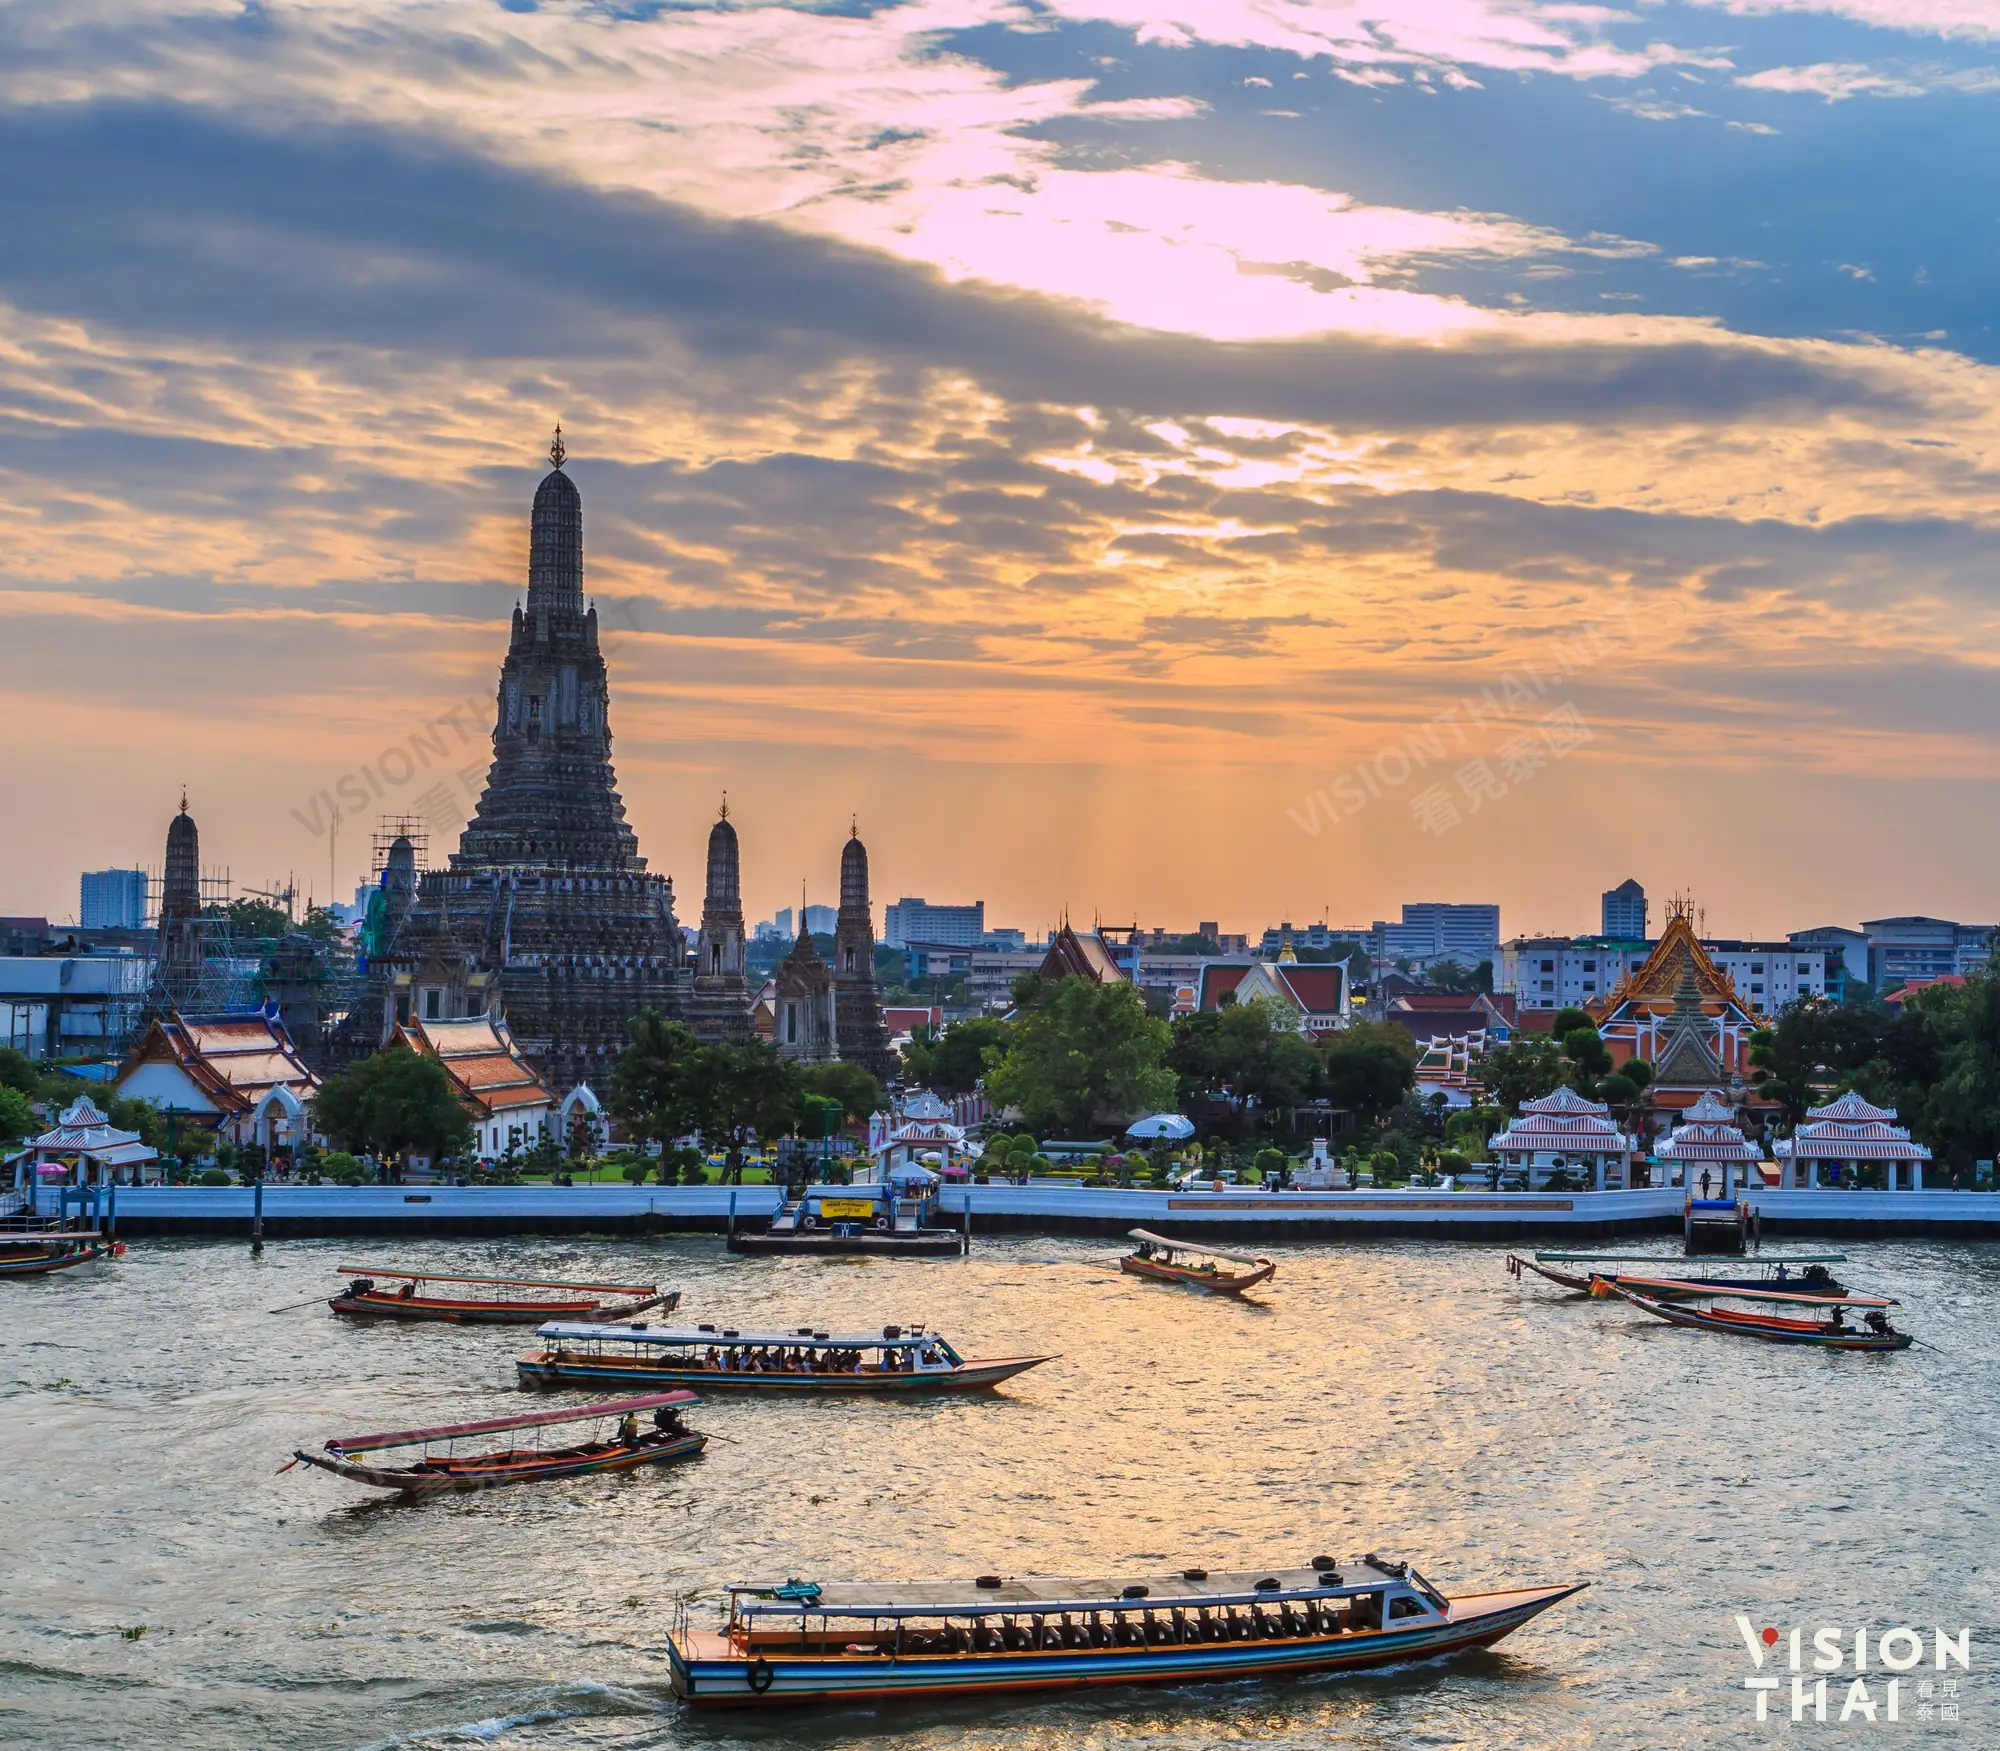 曼谷郑王庙(Wat Arun)又称作「黎明寺」，被誉为「曼谷艾菲尔铁塔」（图片来源：Vision Thai 看见泰国）